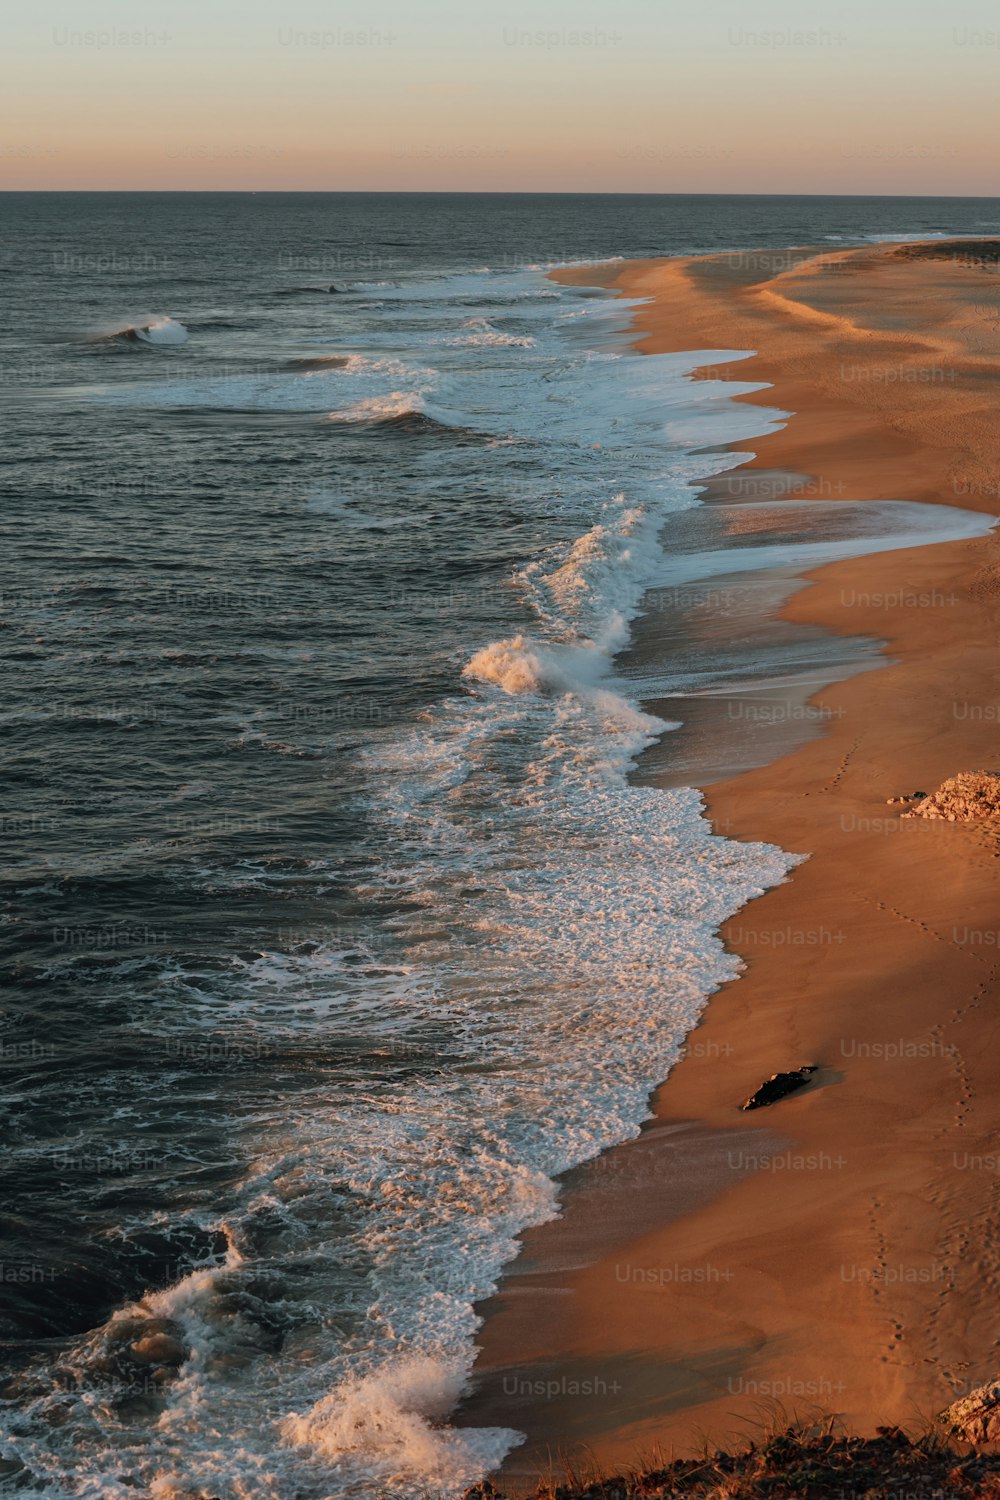 Una vista di una spiaggia con onde provenienti dall'oceano